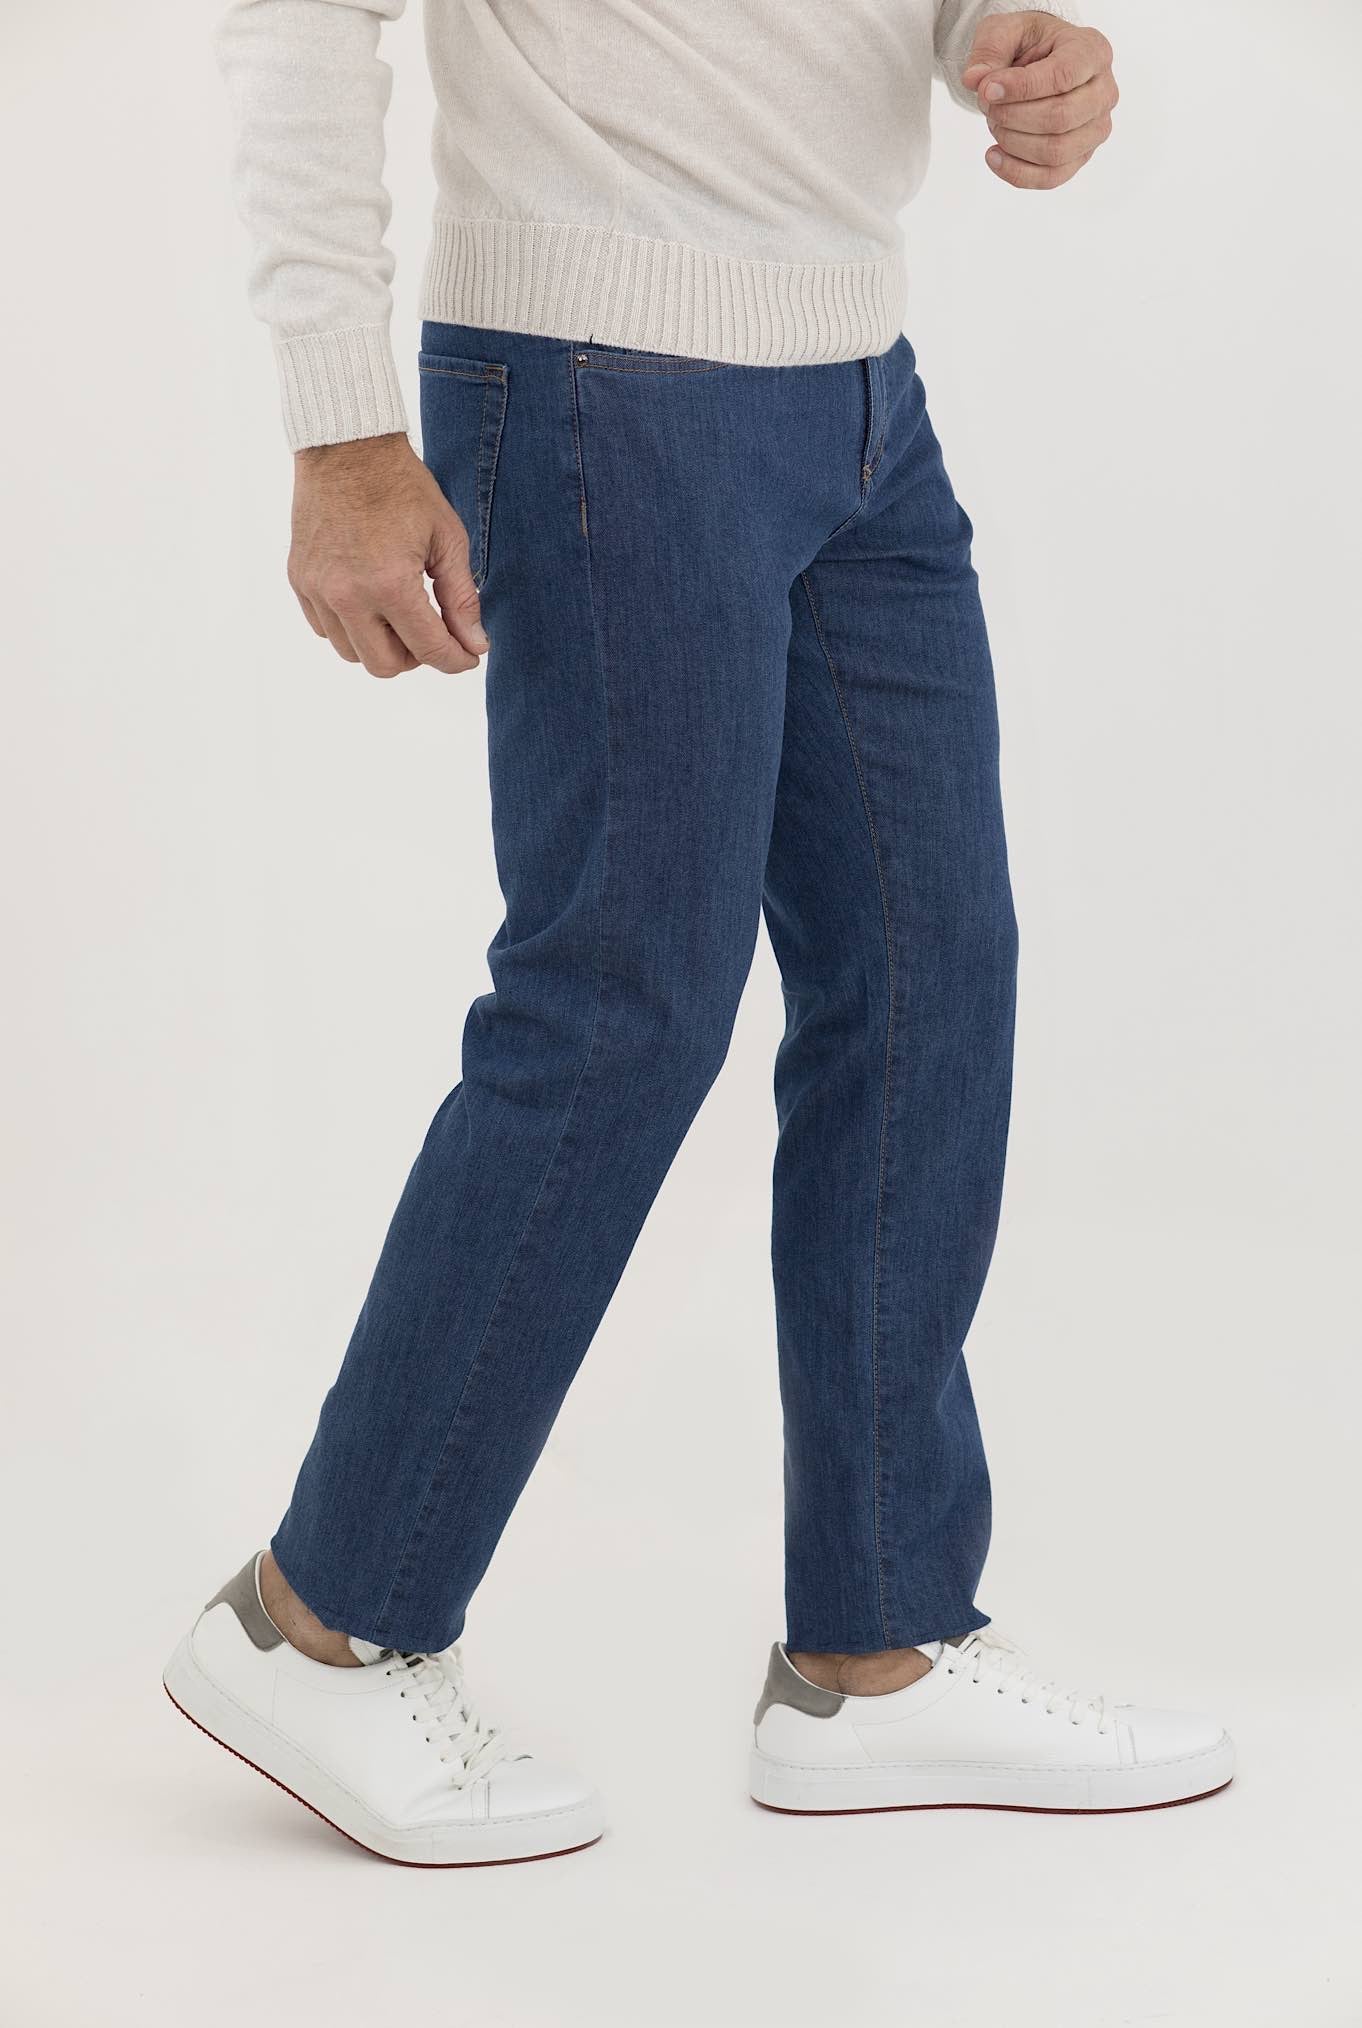 CANALI Jeans 5 Tasche Indaco Naturale Denim Medio